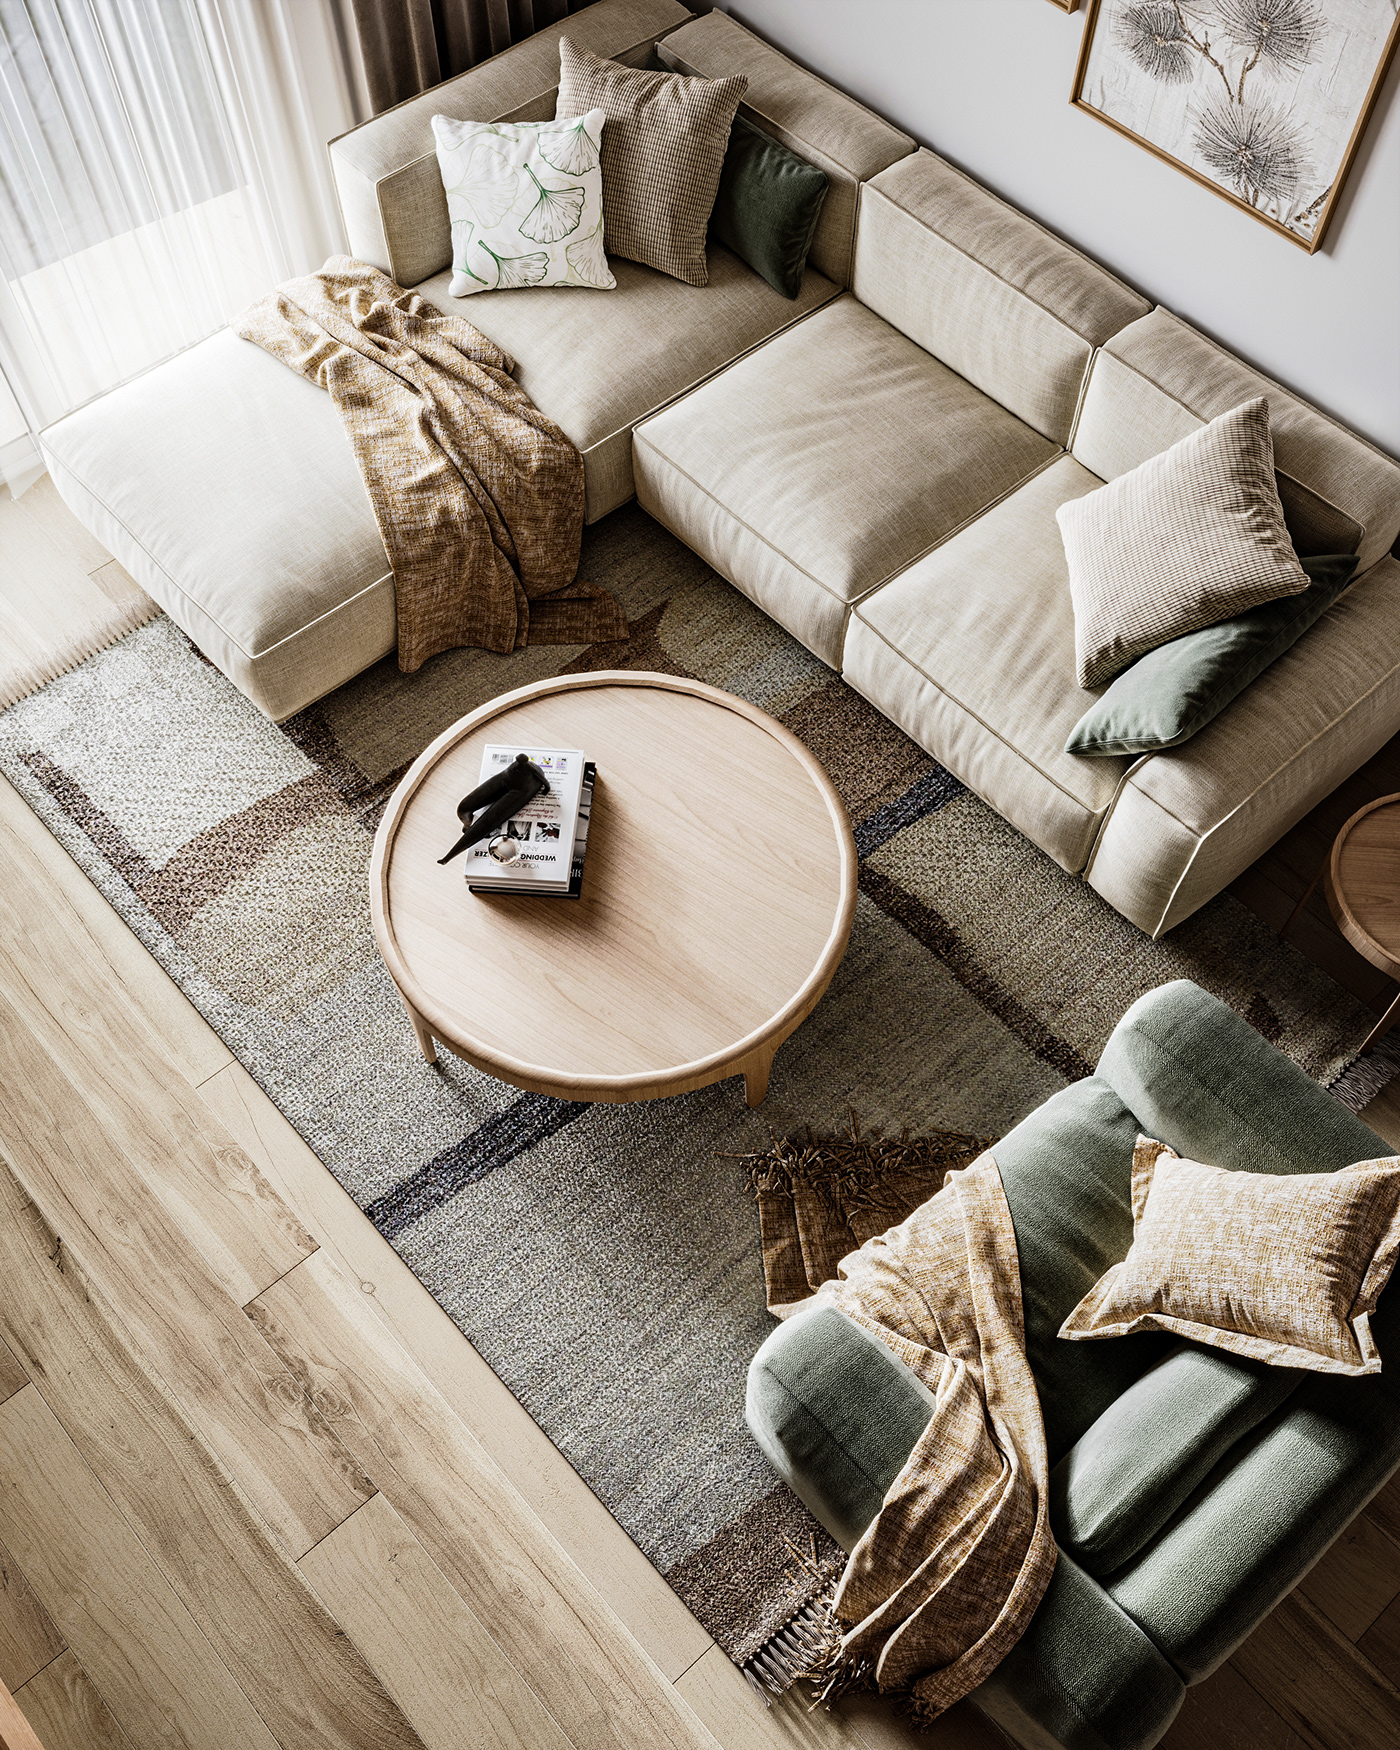 furniture interior design  visualization architecture bohemian boho style 3ds max corona Render home decor